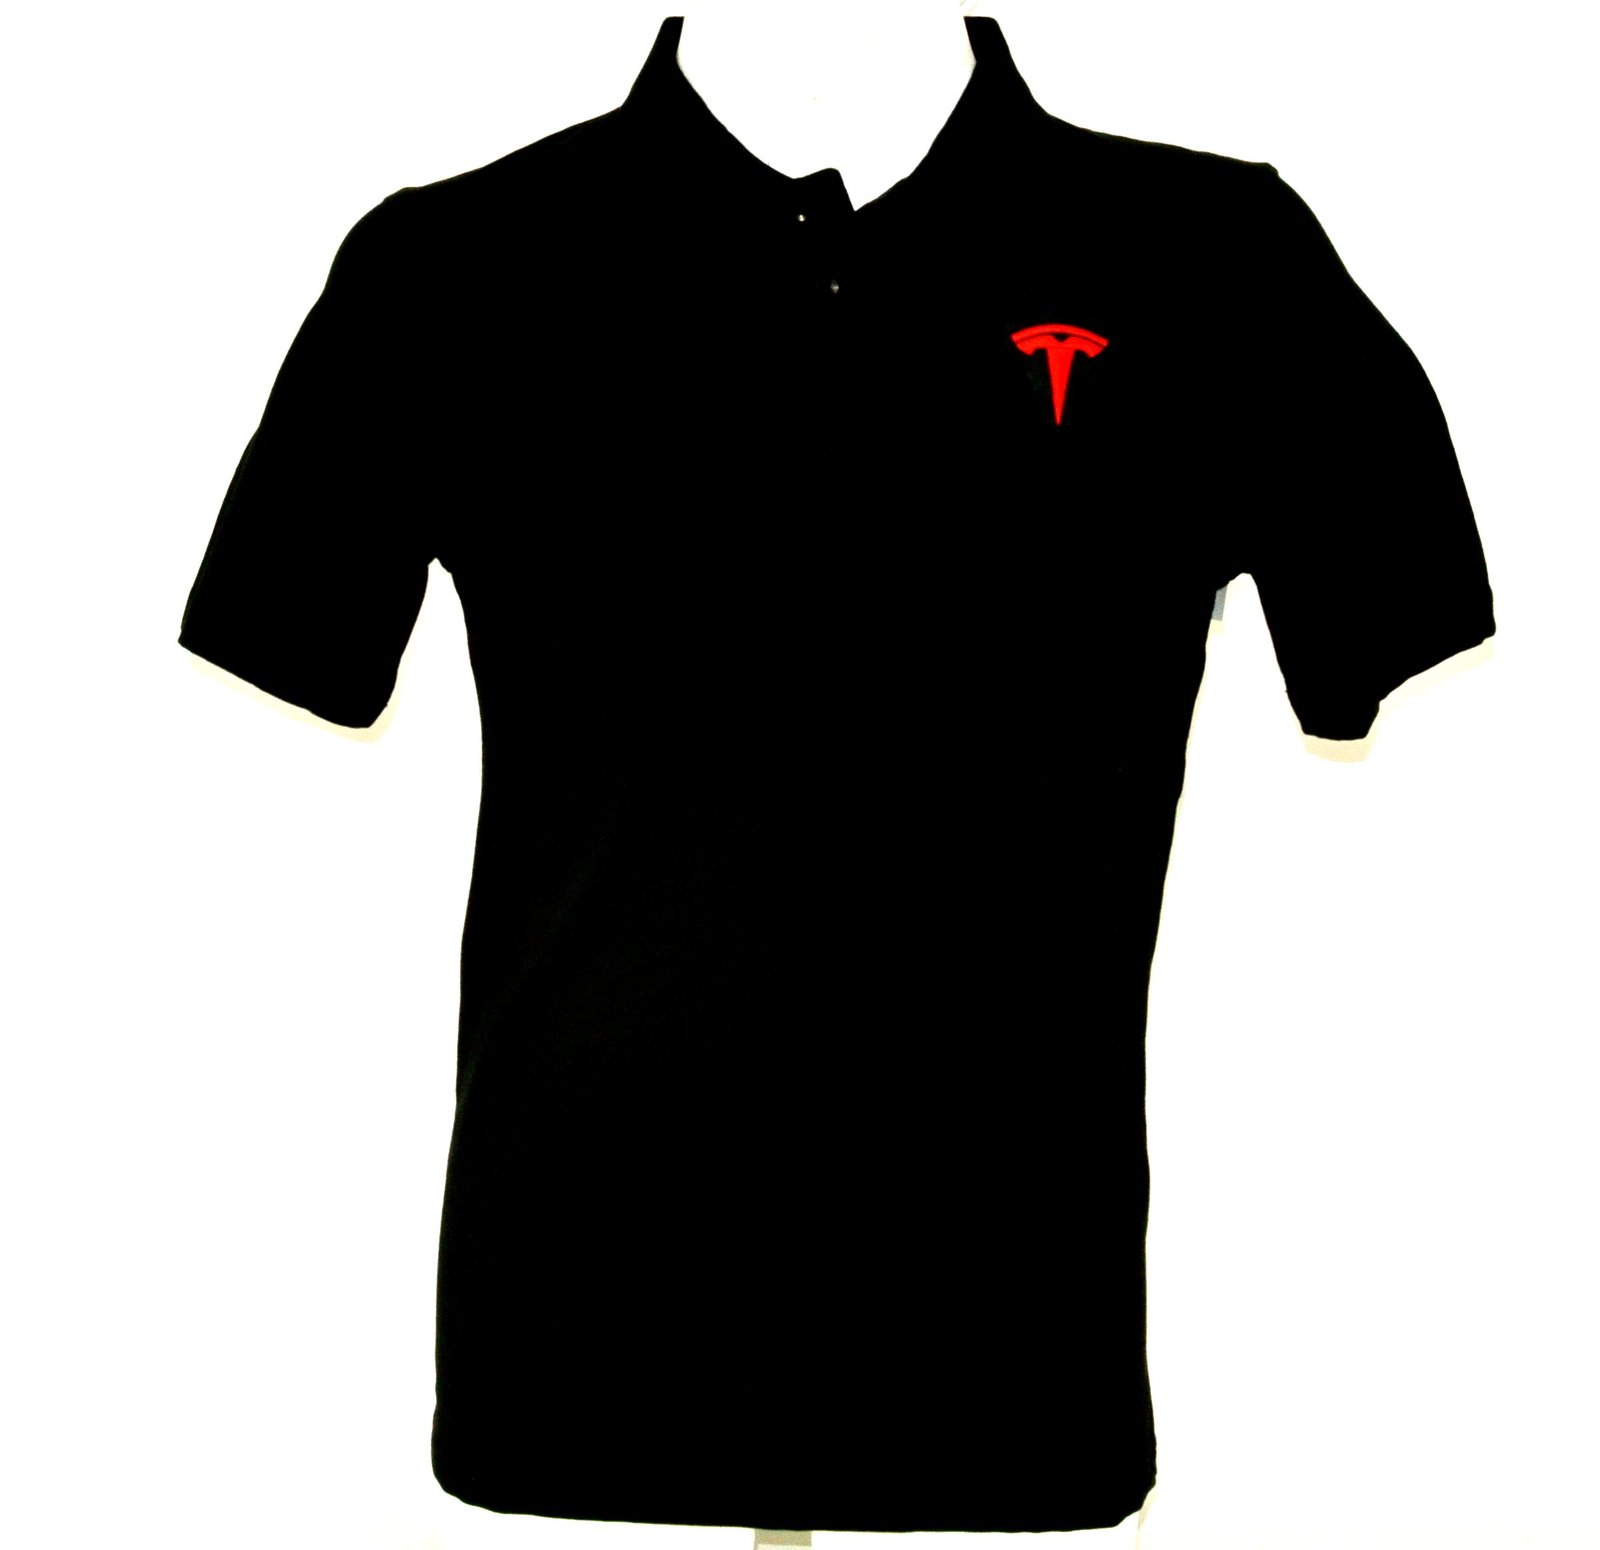 TESLA Car Automotive Employee Uniform Polo Shirt Black NEW MT